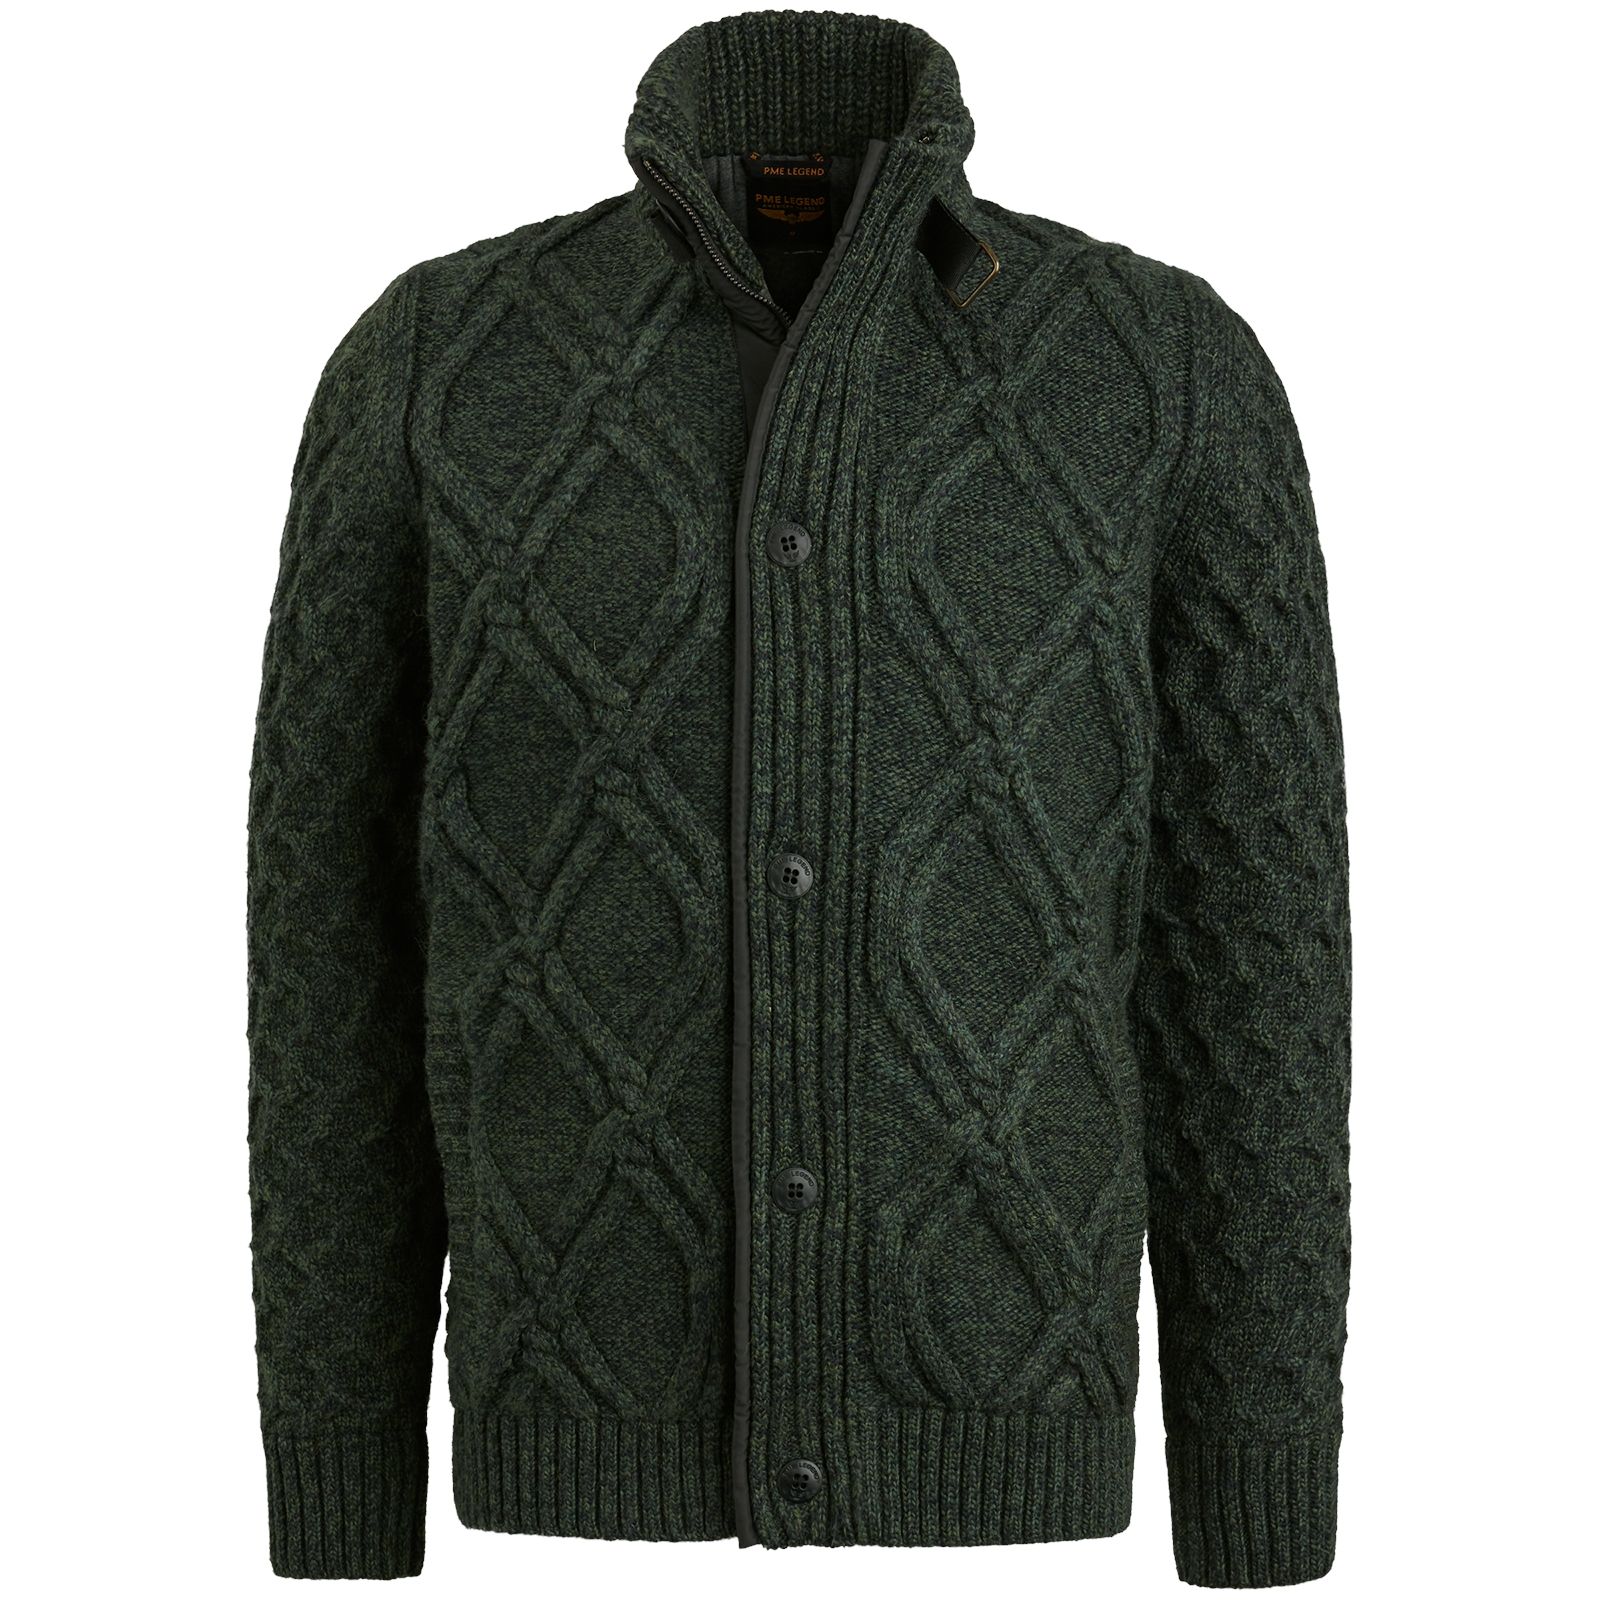 Pme Legend Zip jacket heavy knit mixed yarn Scarab 00105560-6429